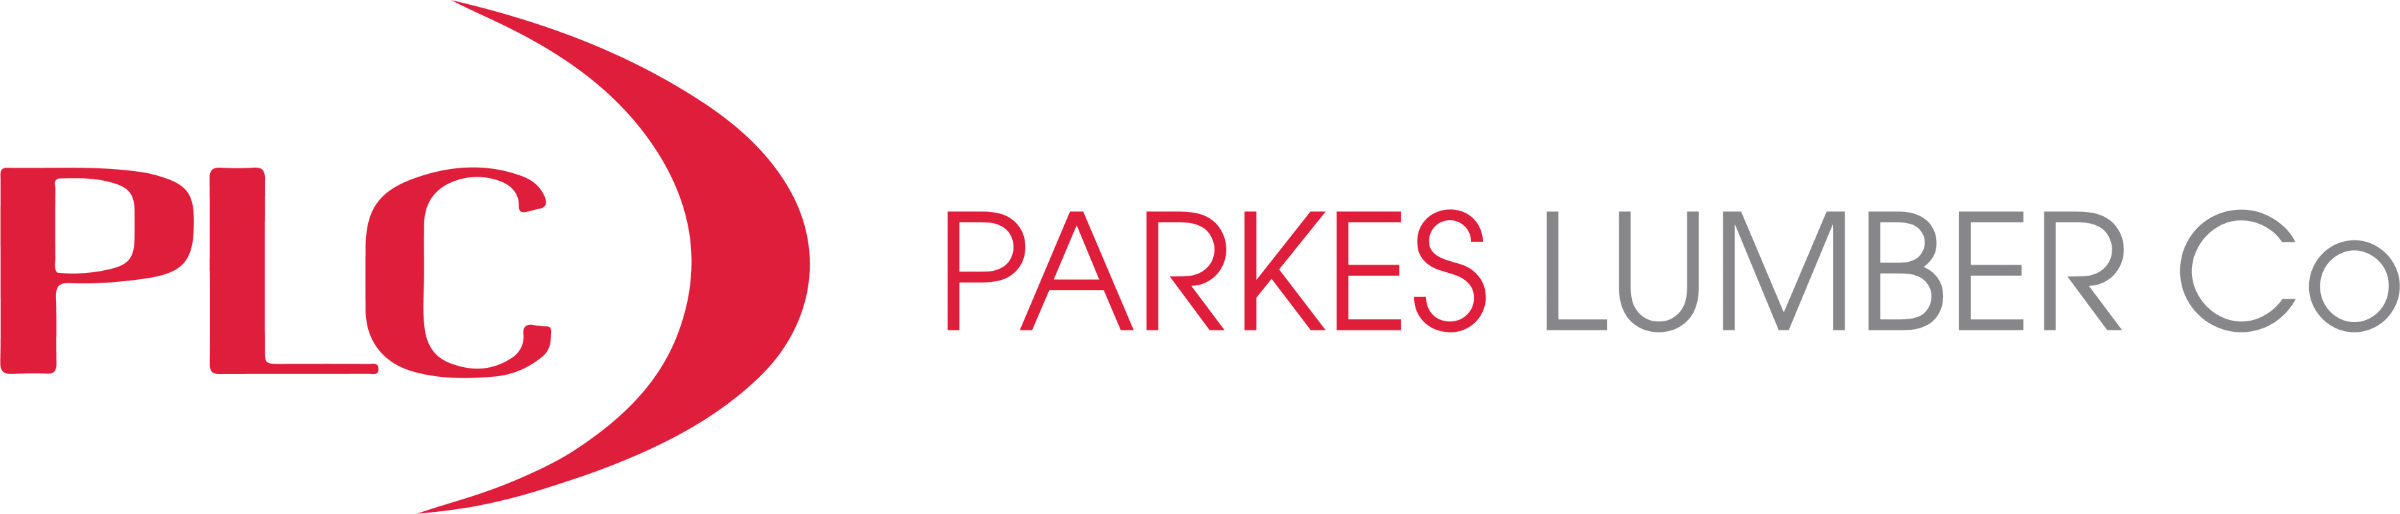 Parkes Lumber Company